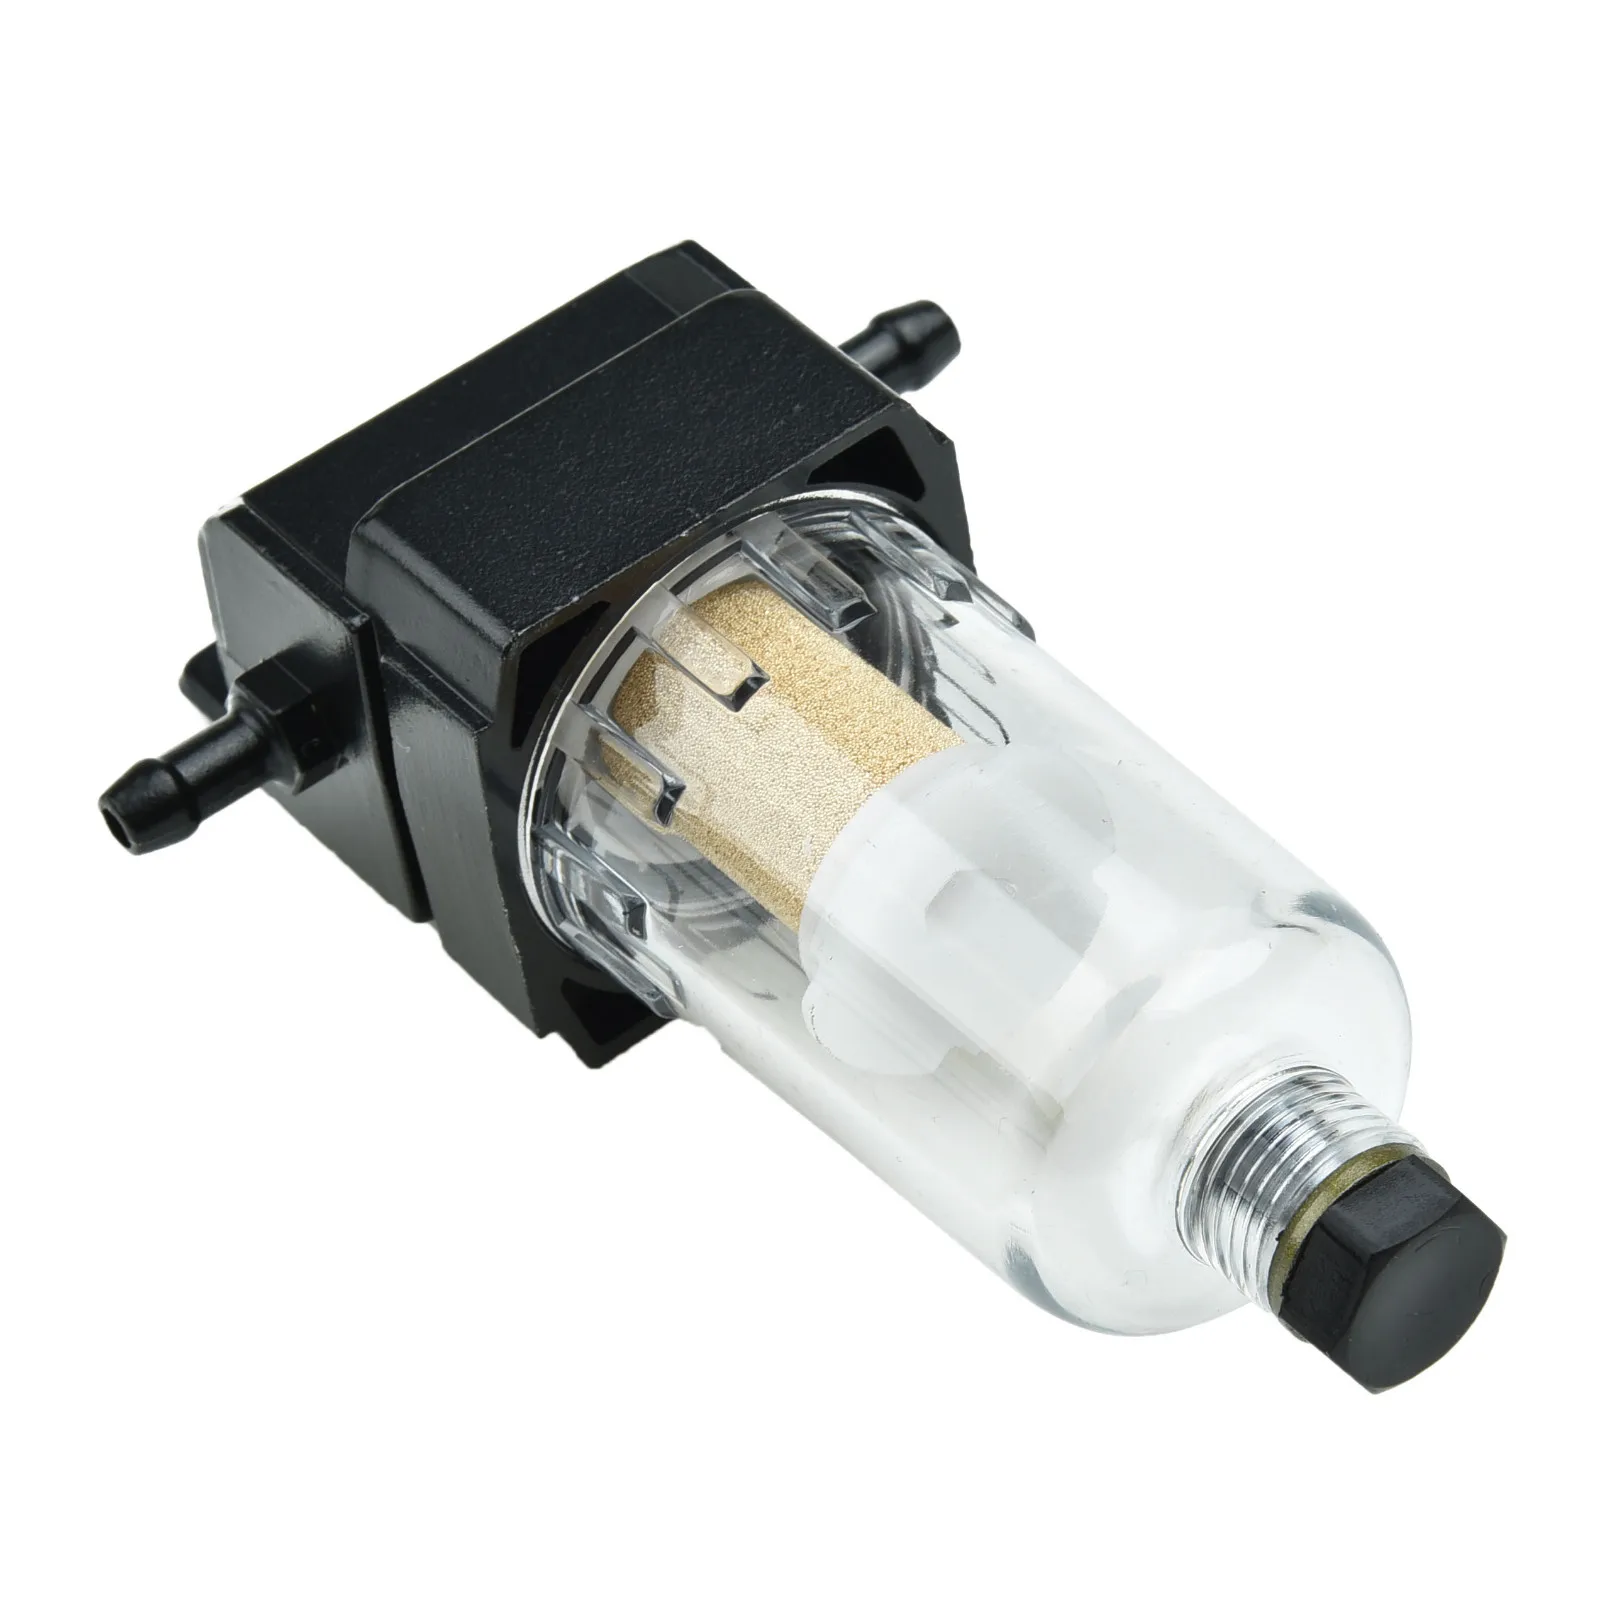 1 шт. Автомобильный топливный фильтр/Водоотделитель Комплект для Webasto Eberspacher 6 мм Высококачественный ABS Авто Аксессуары для замены автомобилей . ' - ' . 0